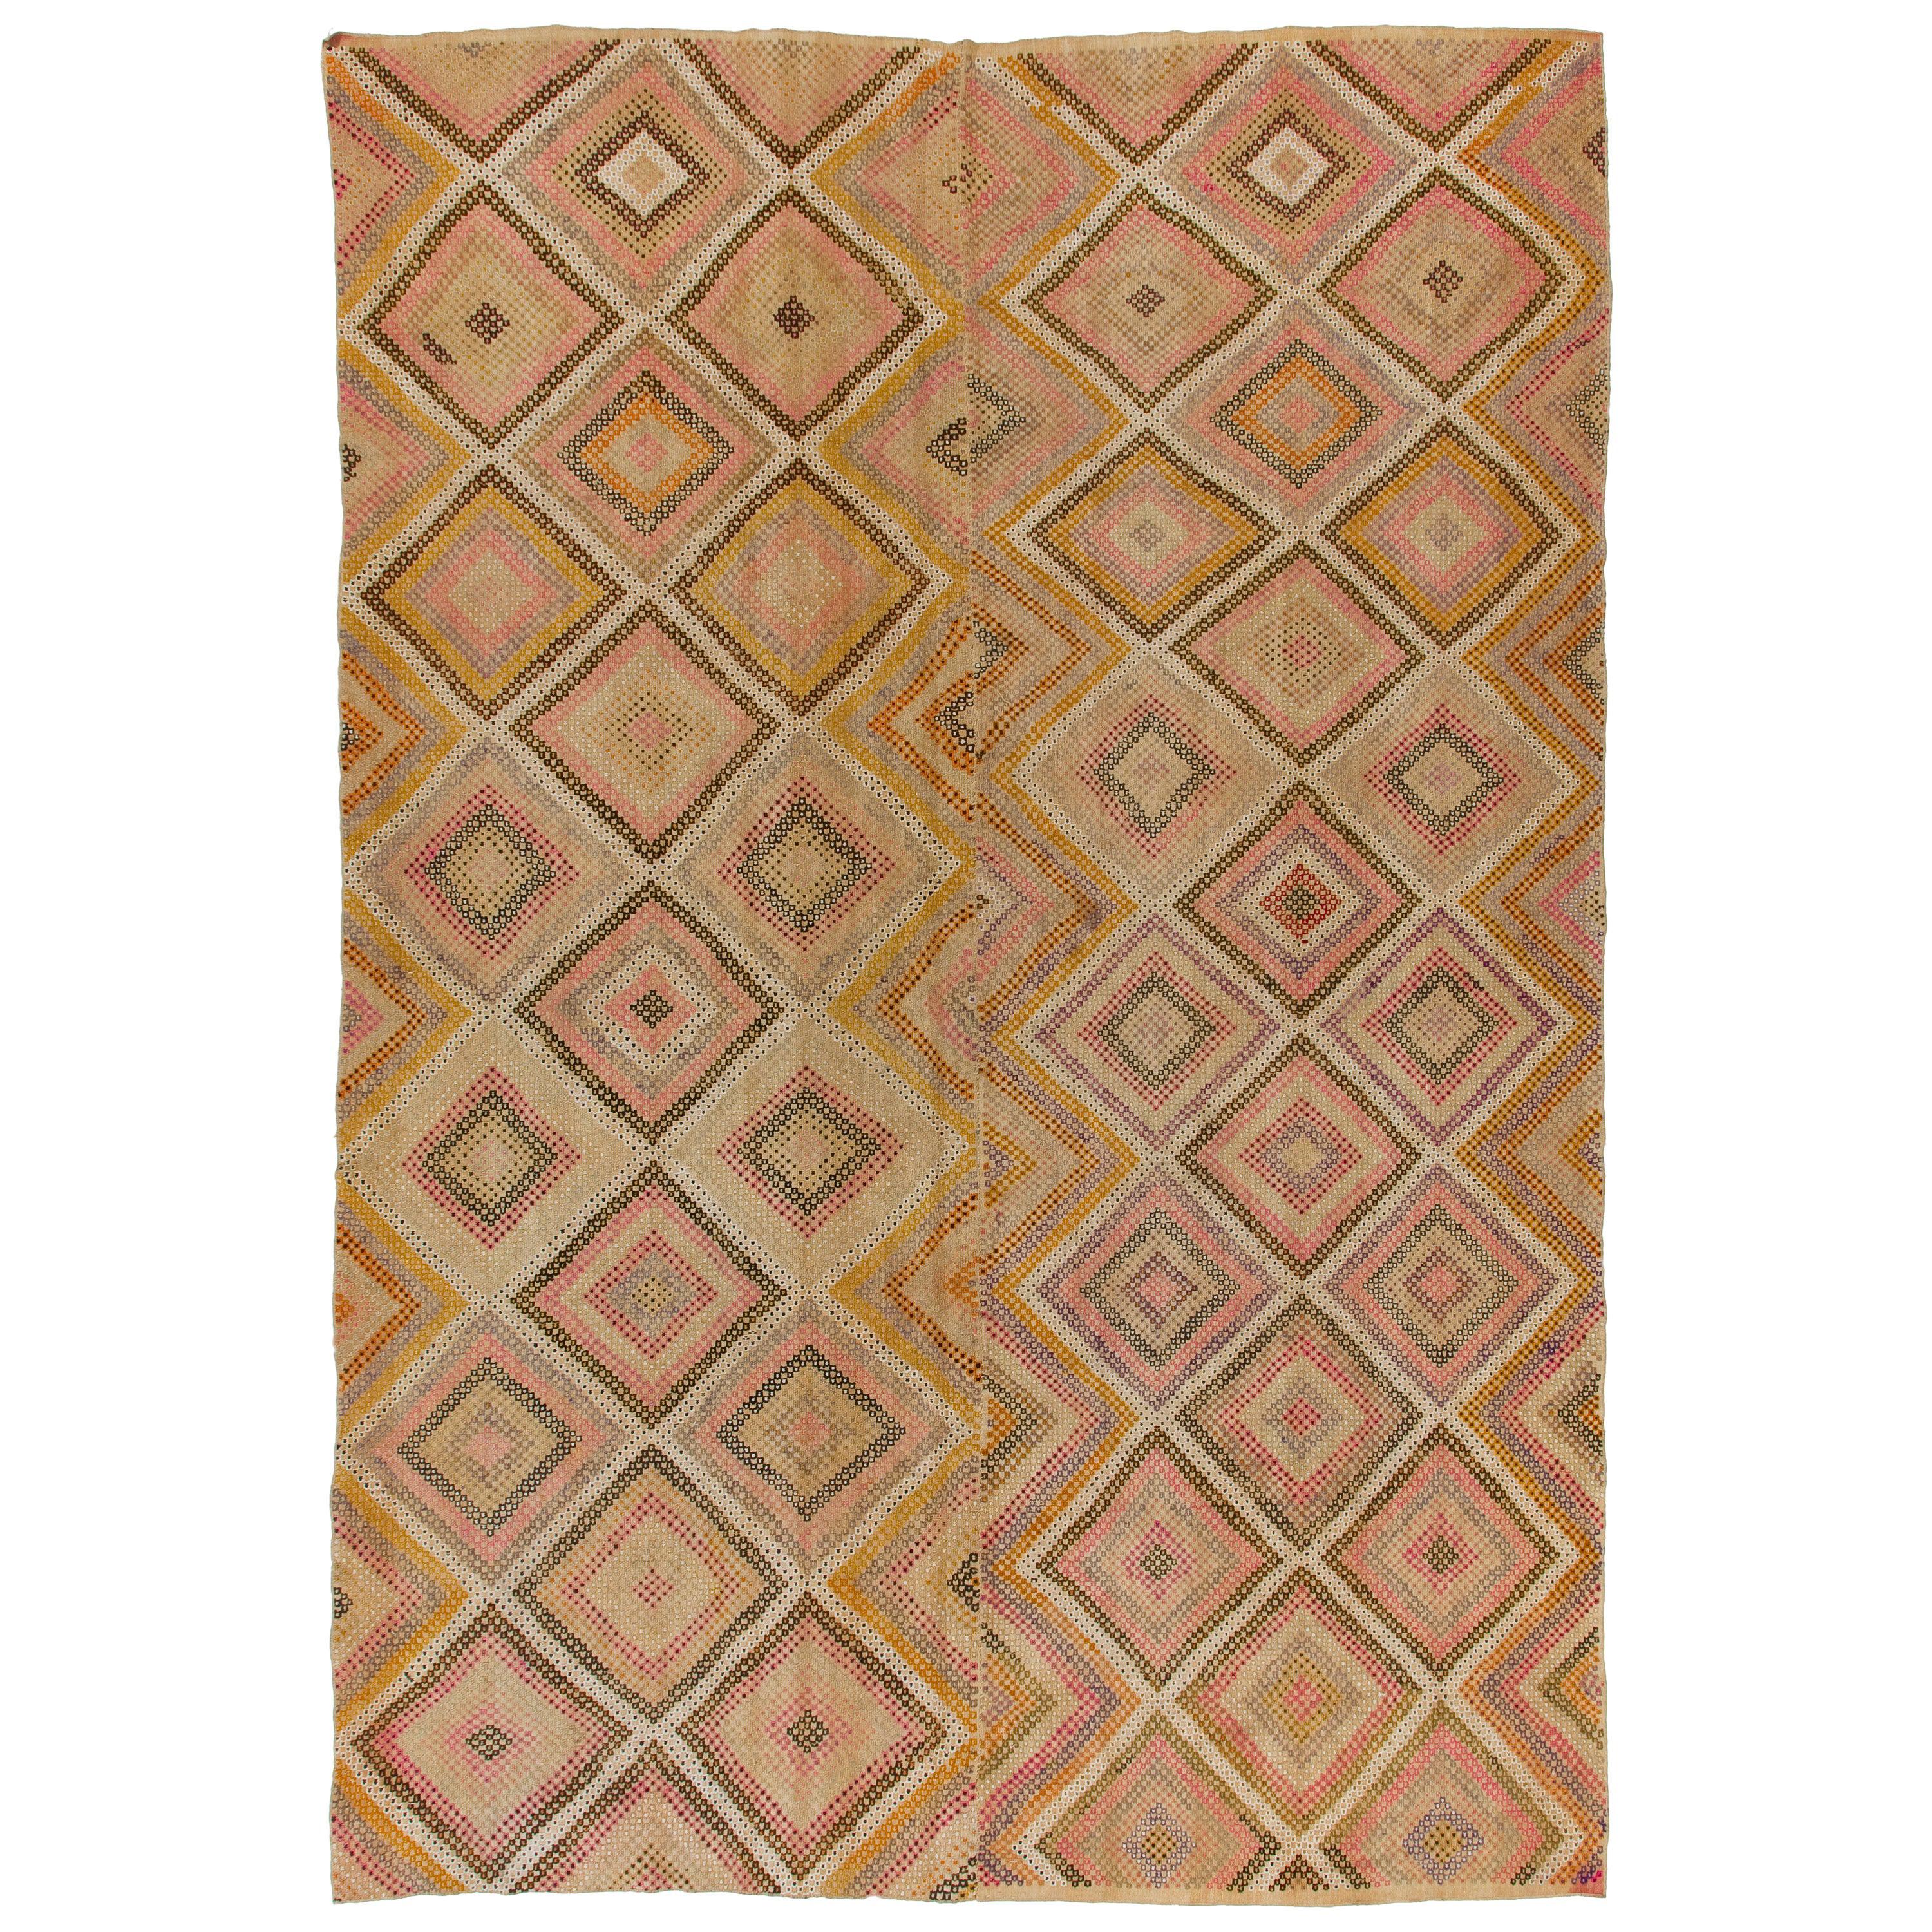 8x12 Ft Vintage Diamond Design Kilim. Soft Colors. One of a kind Wool Floor Rug